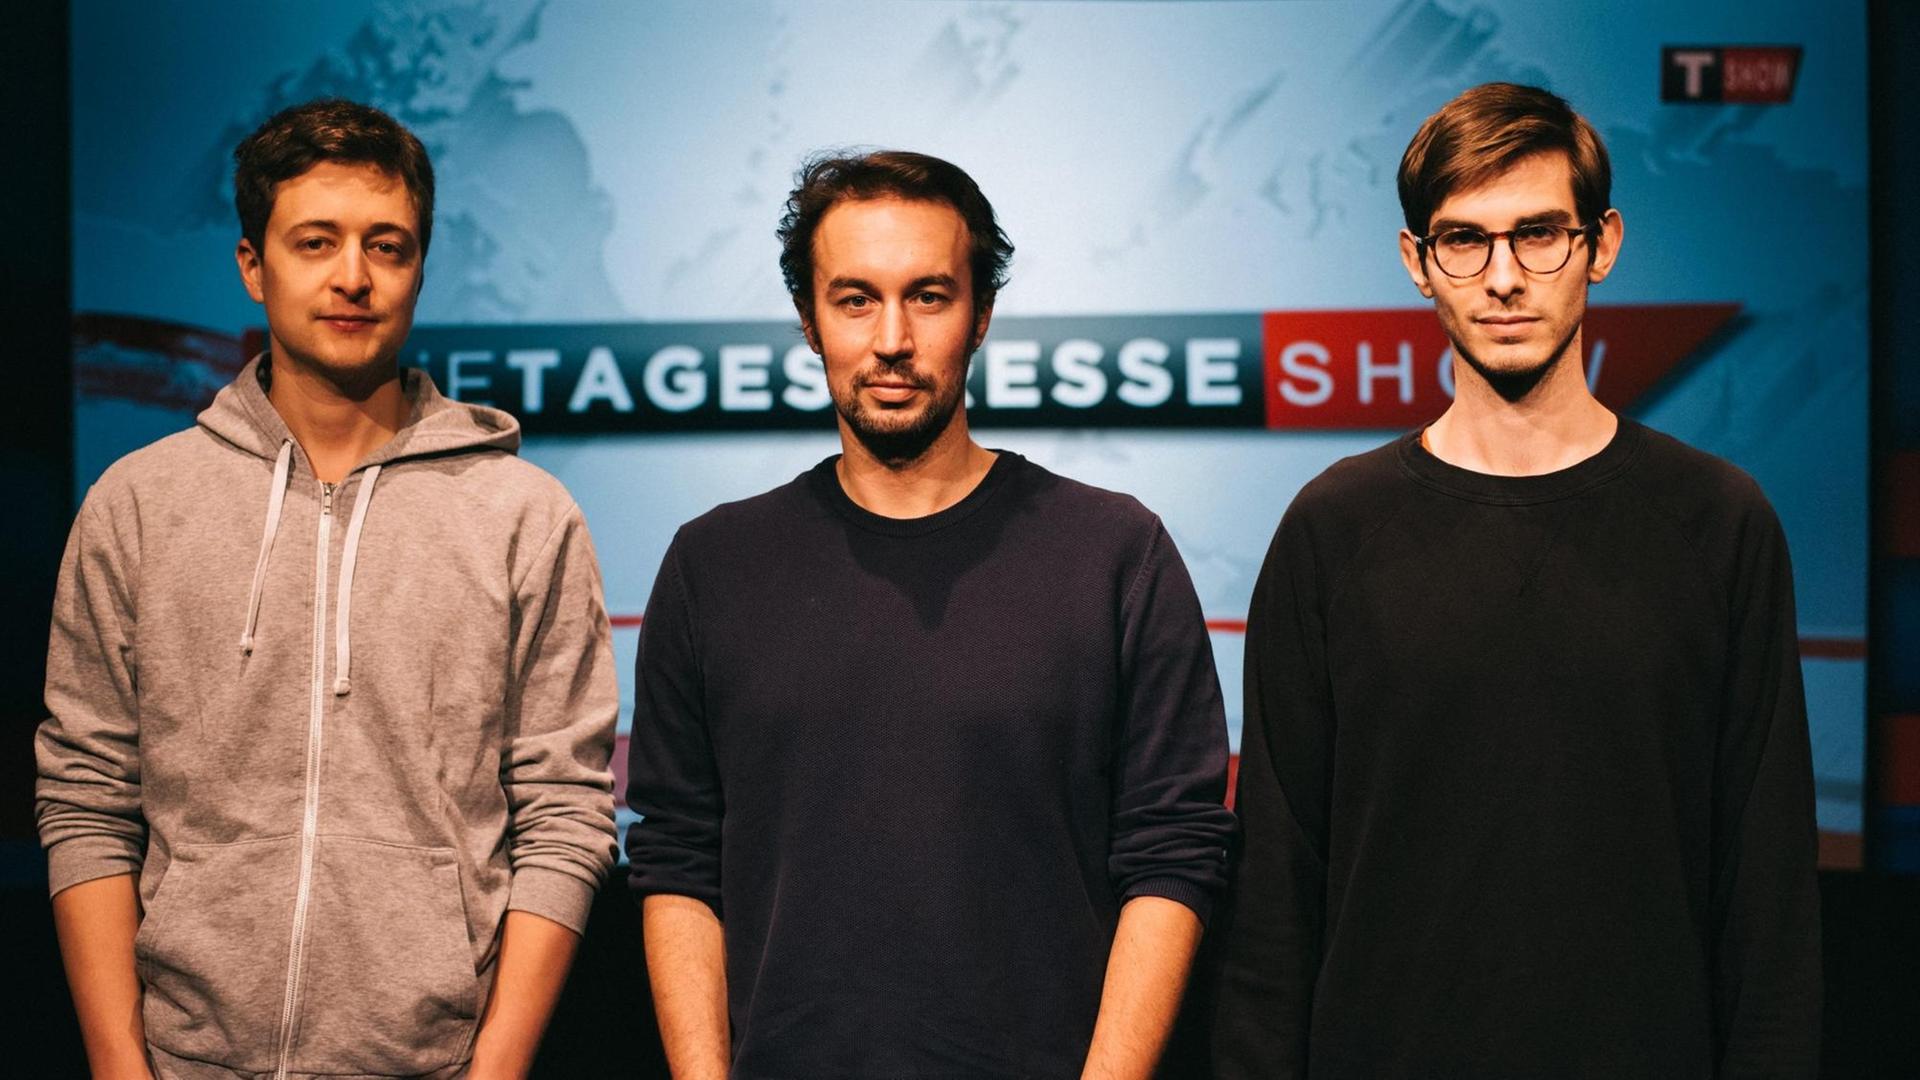 Die drei von der "Tagespresse Show": Fritz Jergitsch, Jürgen Marschal und Sebastian Huber